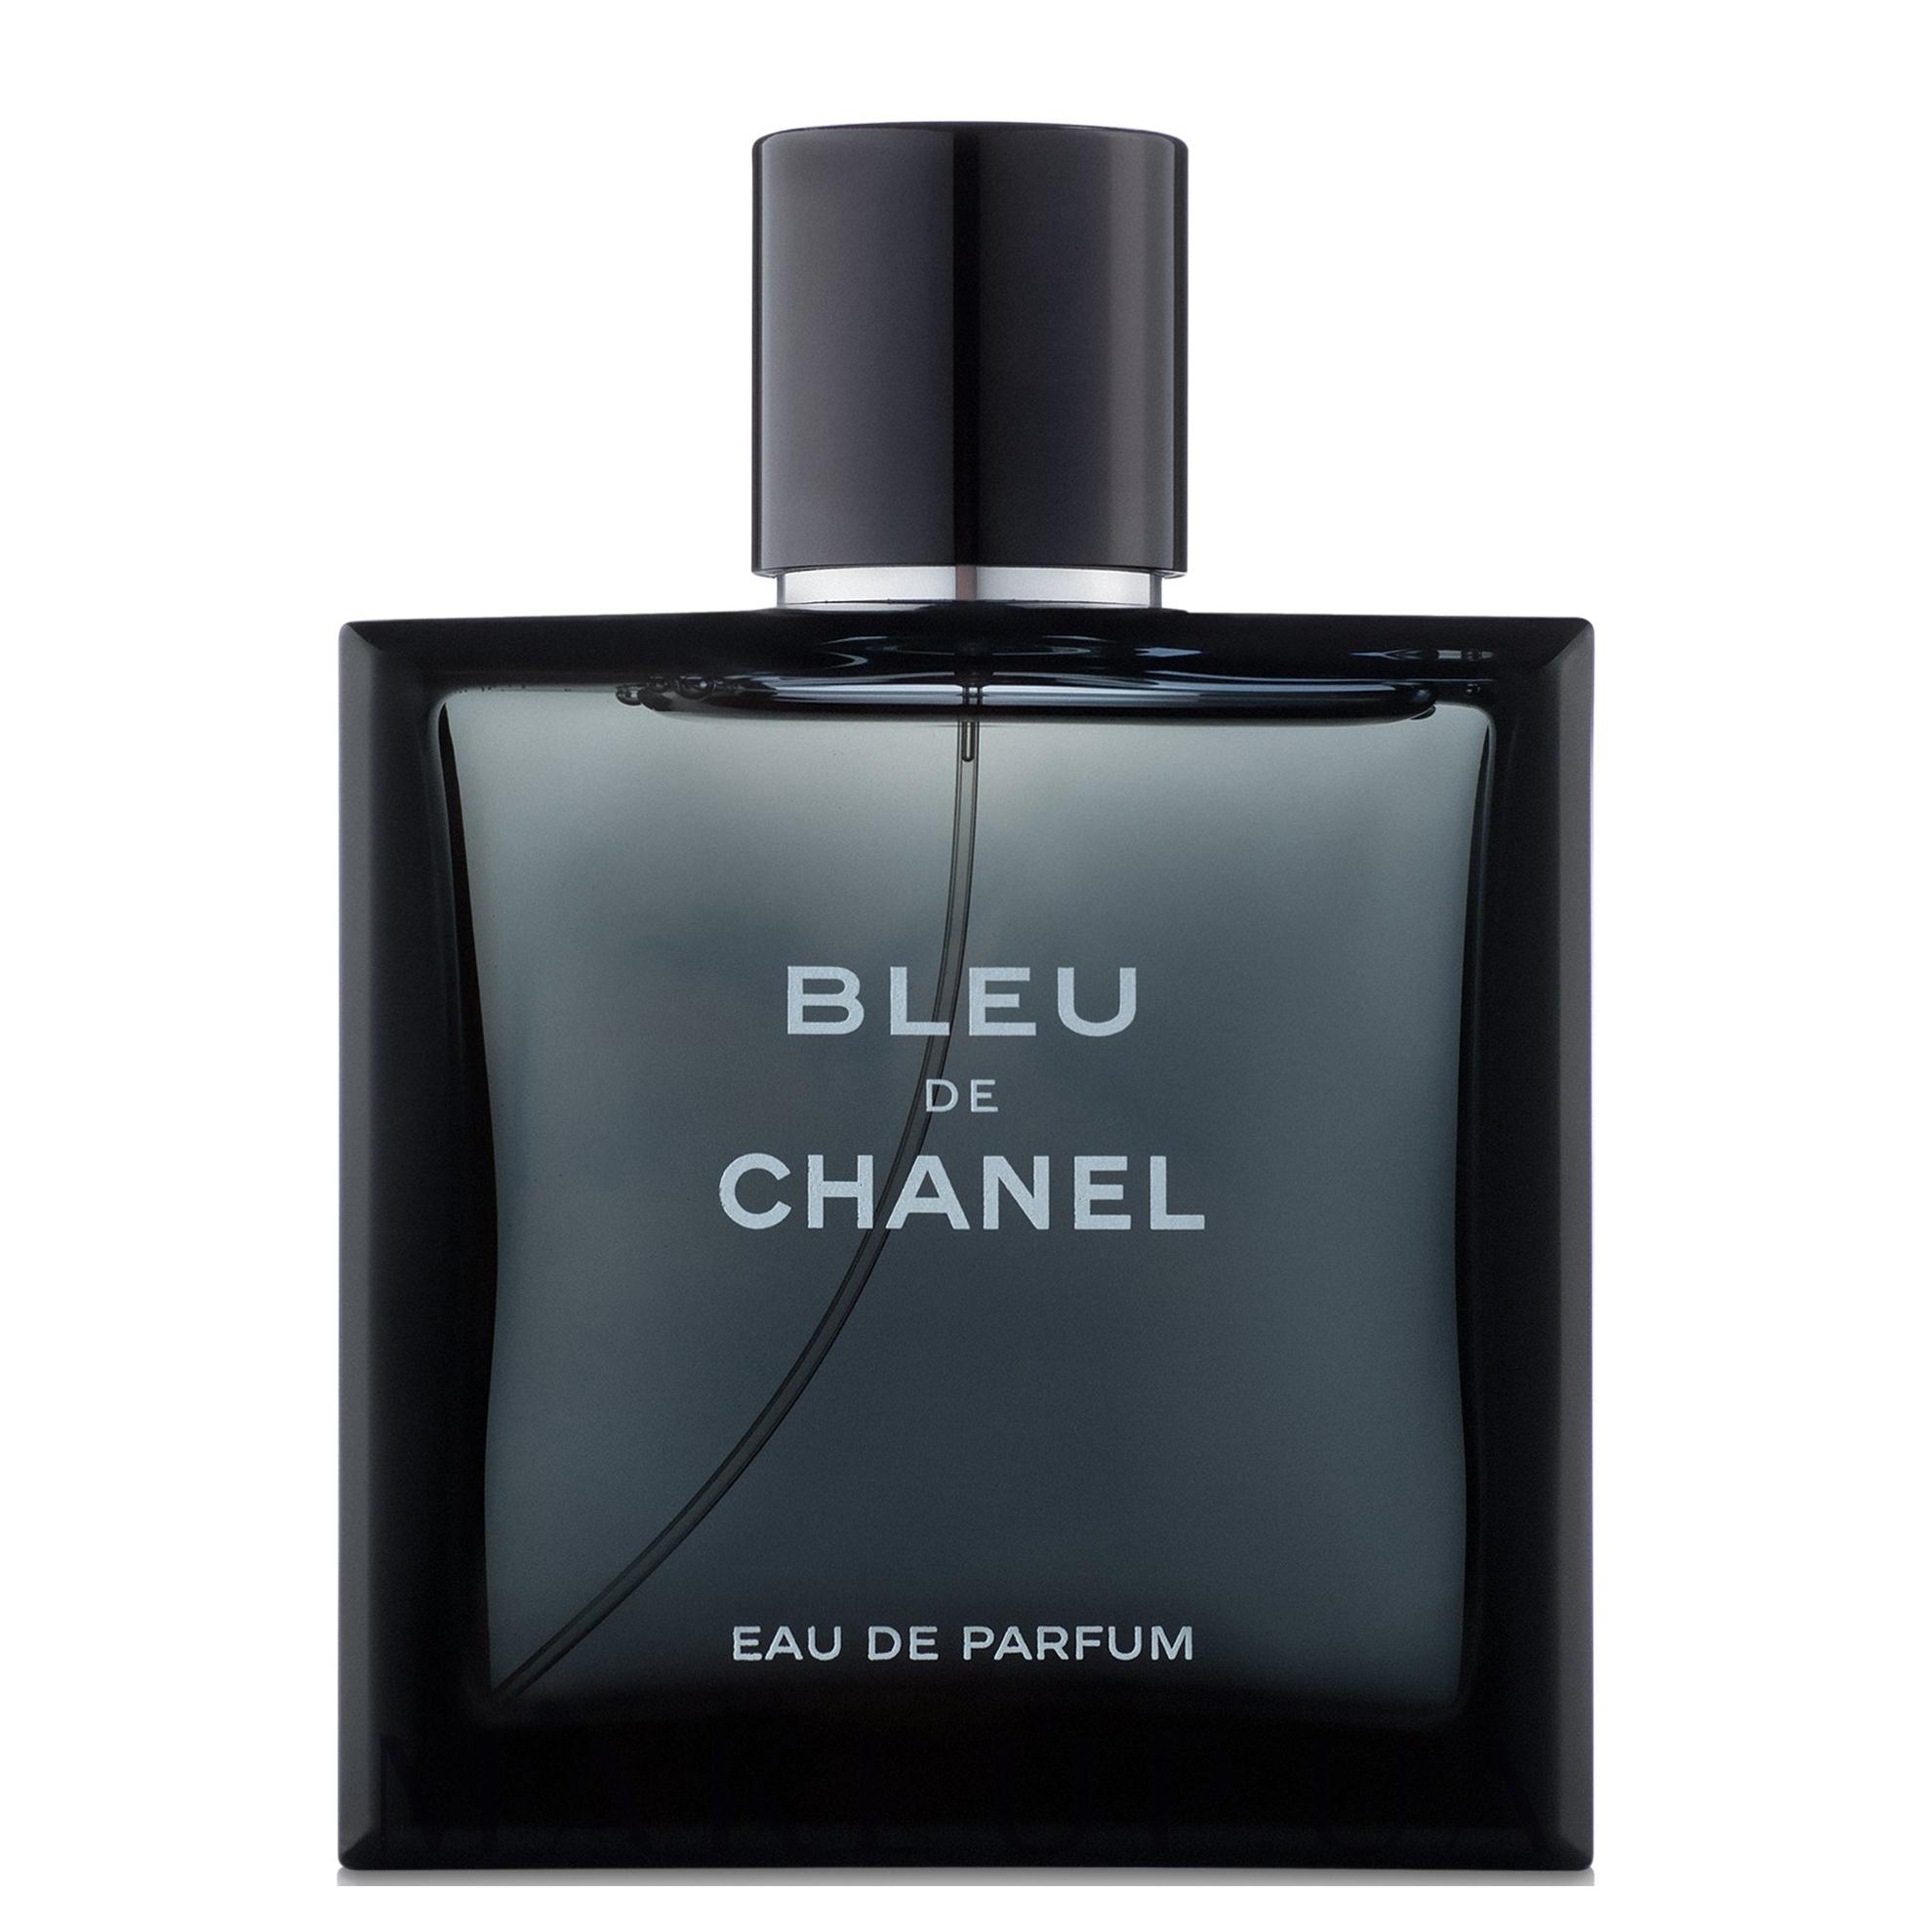 Bleu de chanel eau de. Chanel bleu EDP 100ml. Bleu de Chanel Parfum 100 мл. Шанель Блю мужские 100мл туалетная вода. Шанель bleu de Chanel 100 парфюмерная вода.